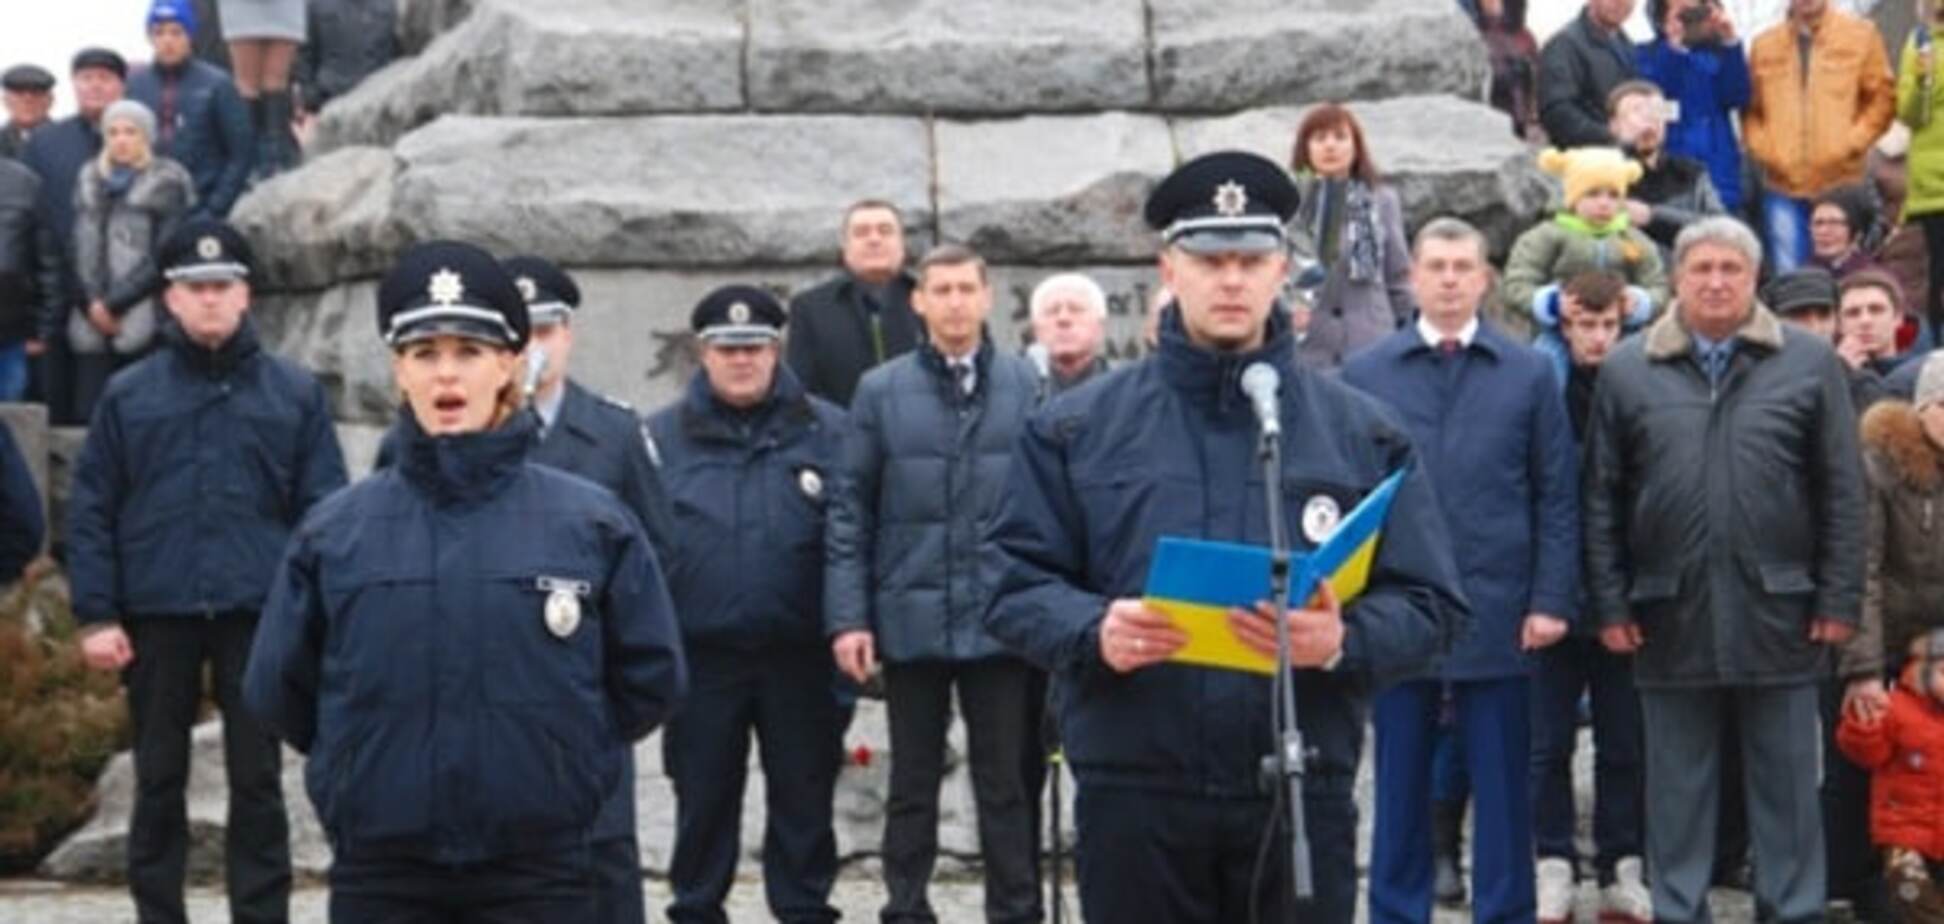 'Державною!' В Черкассах замглаву полиции 'оборали' за русский язык. Видеофакт